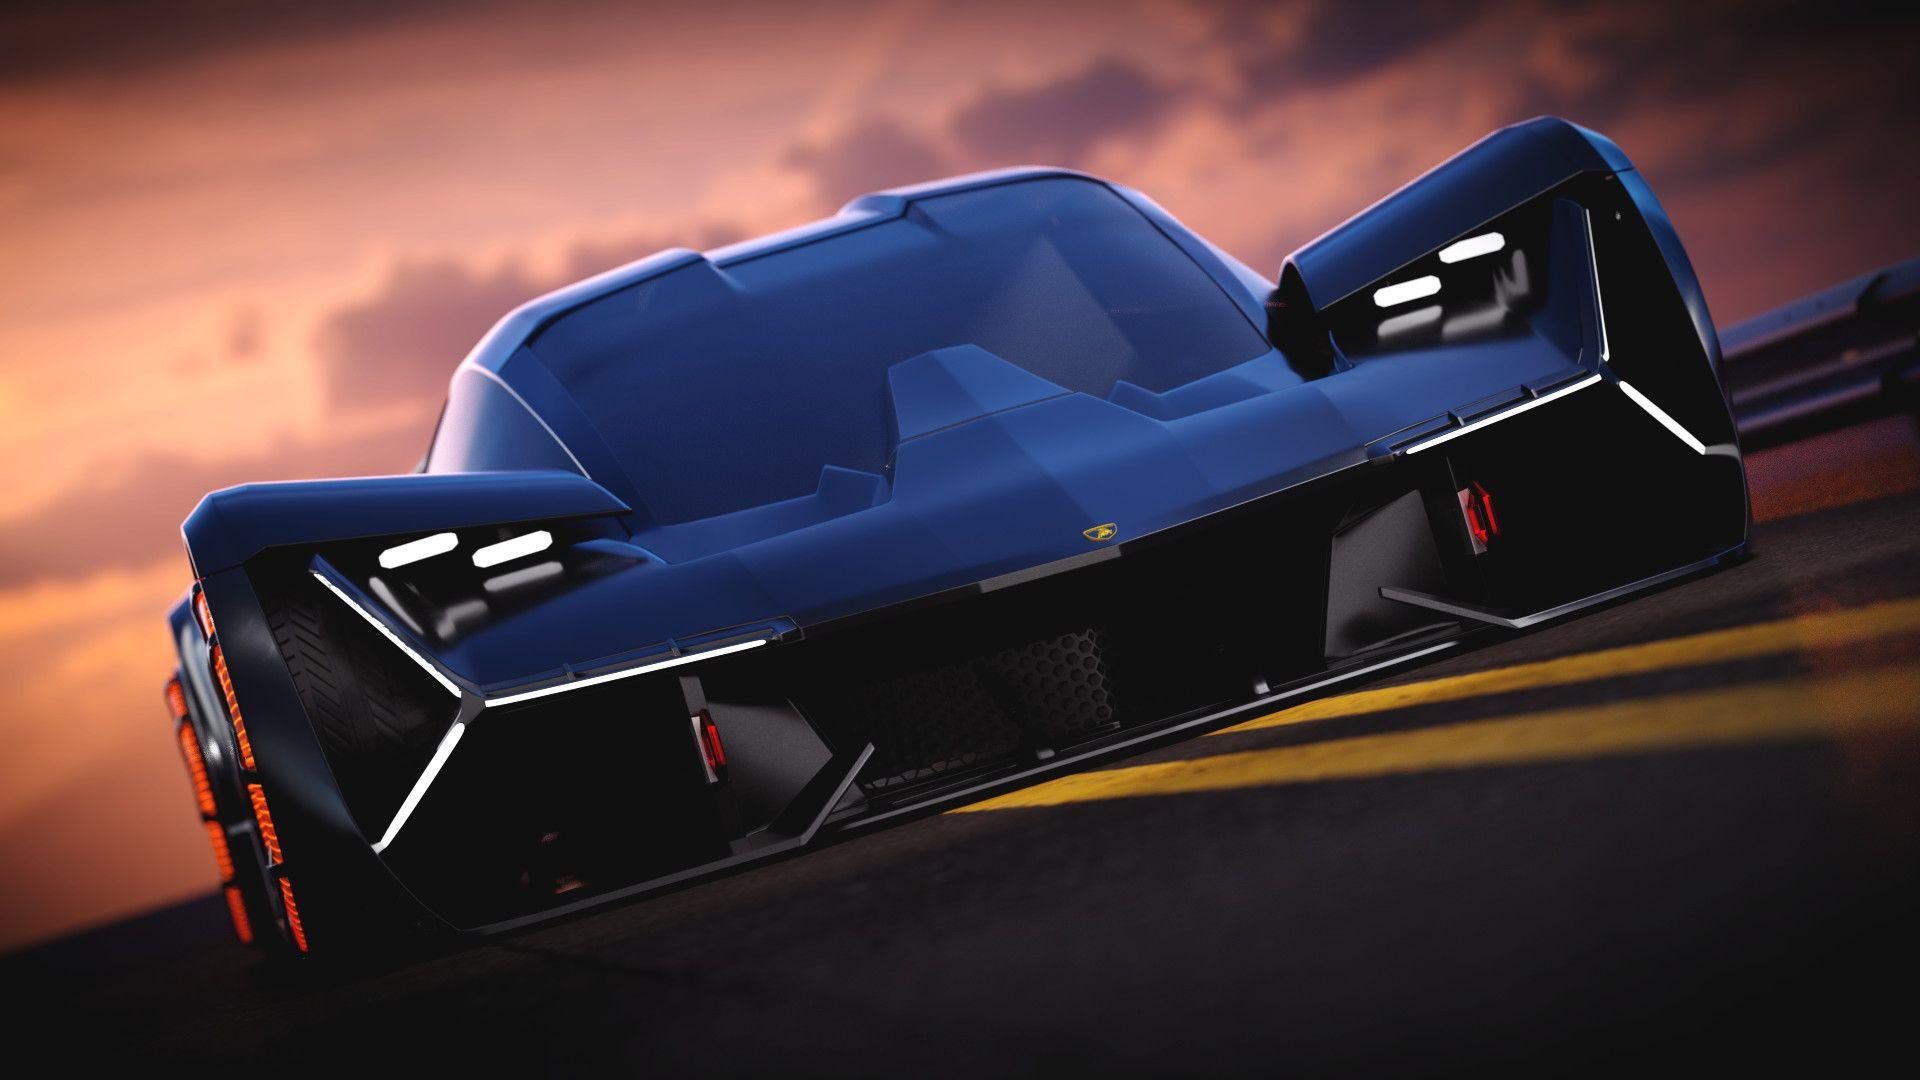 2017 Lamborghini Terzo Millennio Concept Wallpaper 011 - WSupercars